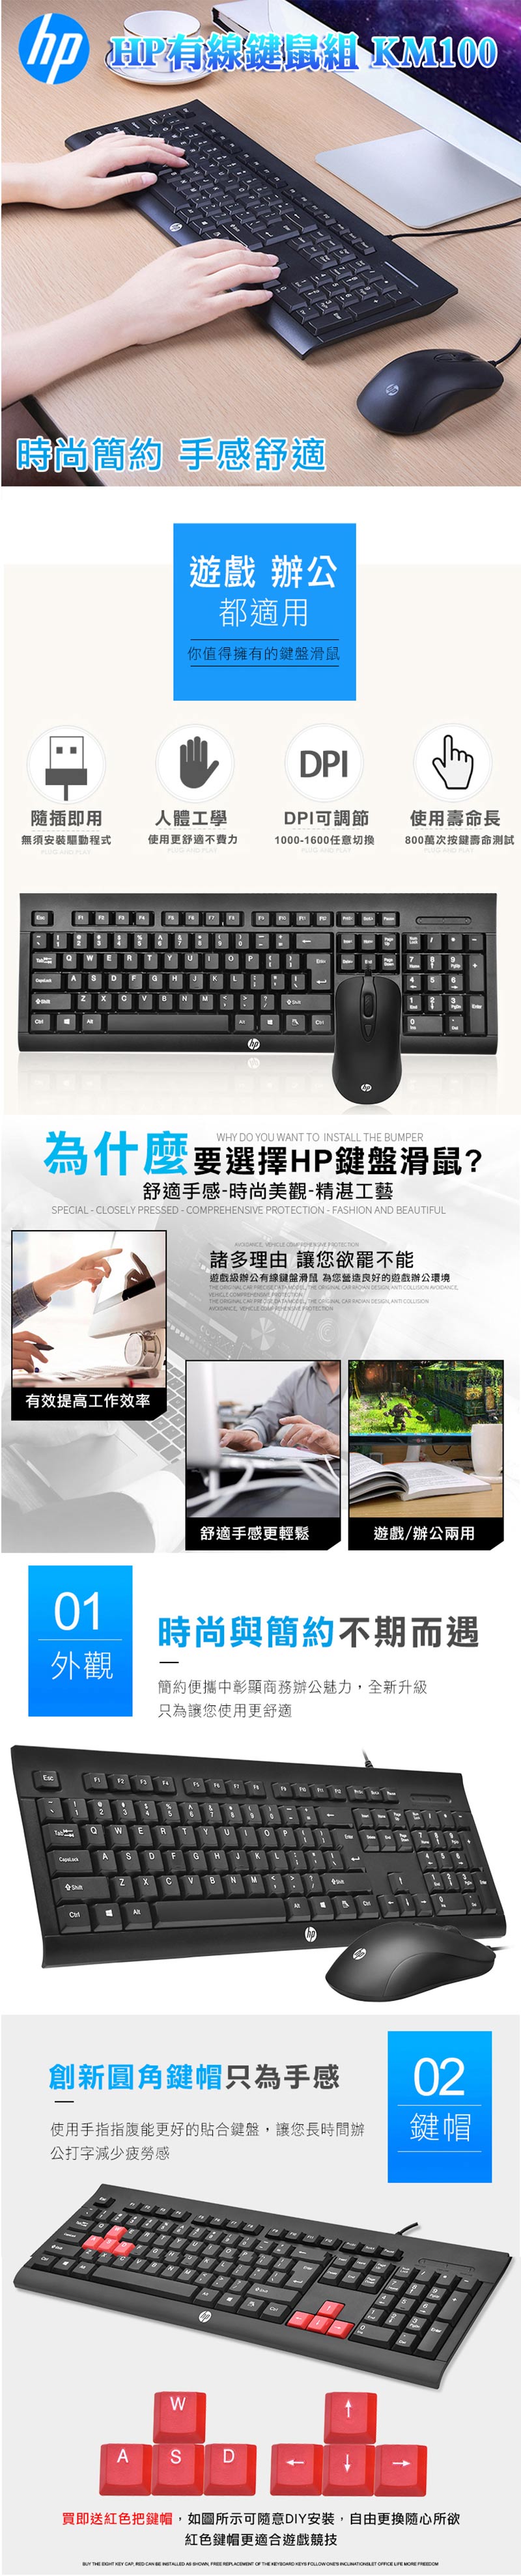 HP有線キーボードとマウスのコンボKM100 - ショップ hp-tw PCアクセサリー - Pinkoi